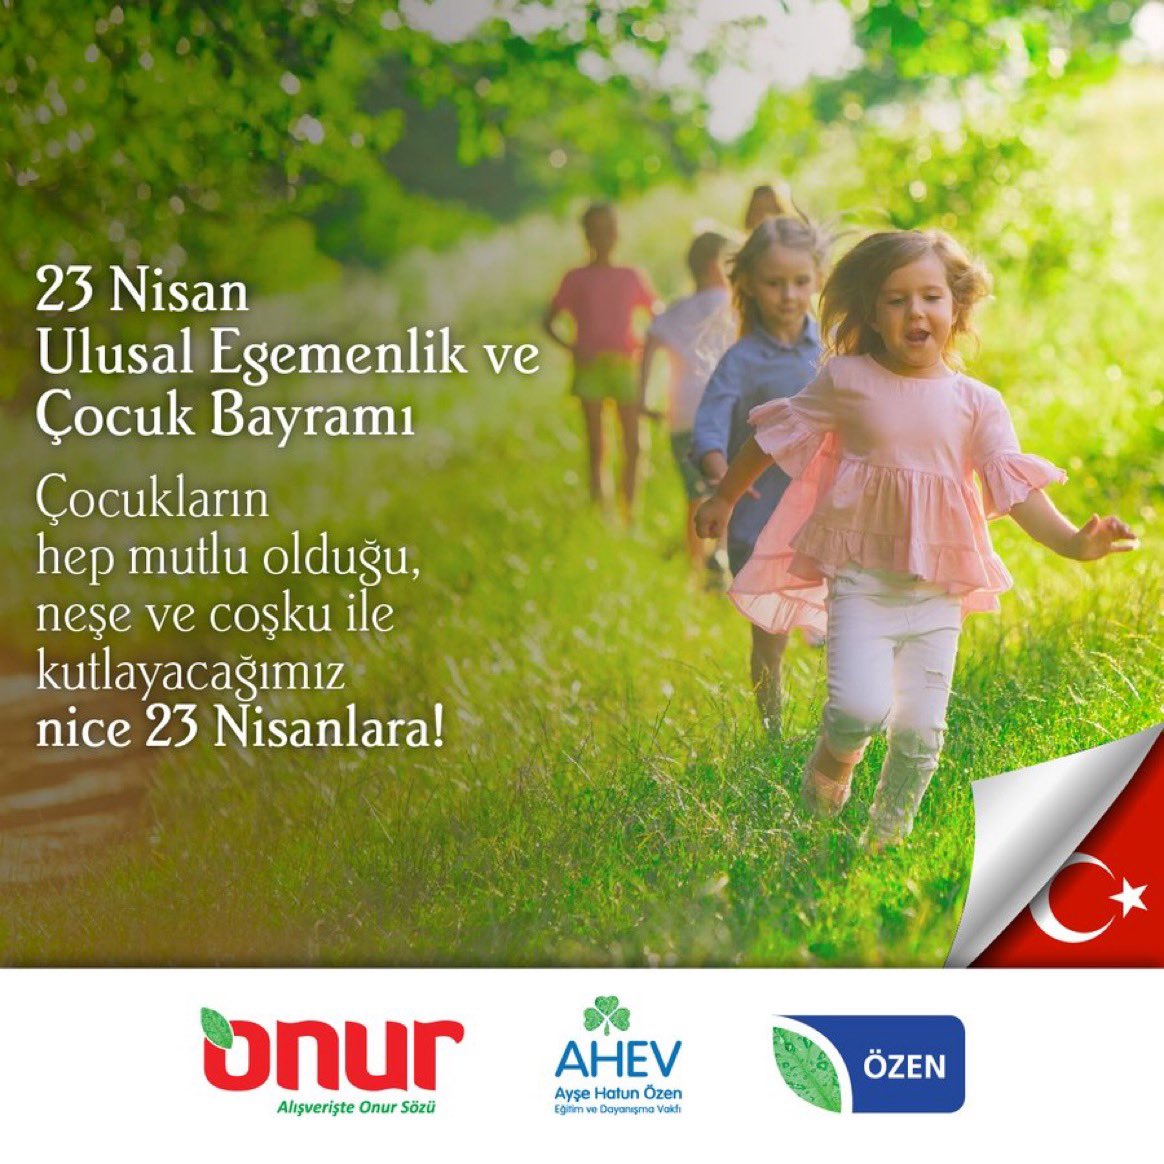 23 Nisan Ulusal Egemenlik ve Çocuk Bayramı kutlu olsun. 🇹🇷
#OnurMarket
#23Nisan #UlusalEgemenlikveÇocukBayramı #23NisanKutluOlsun